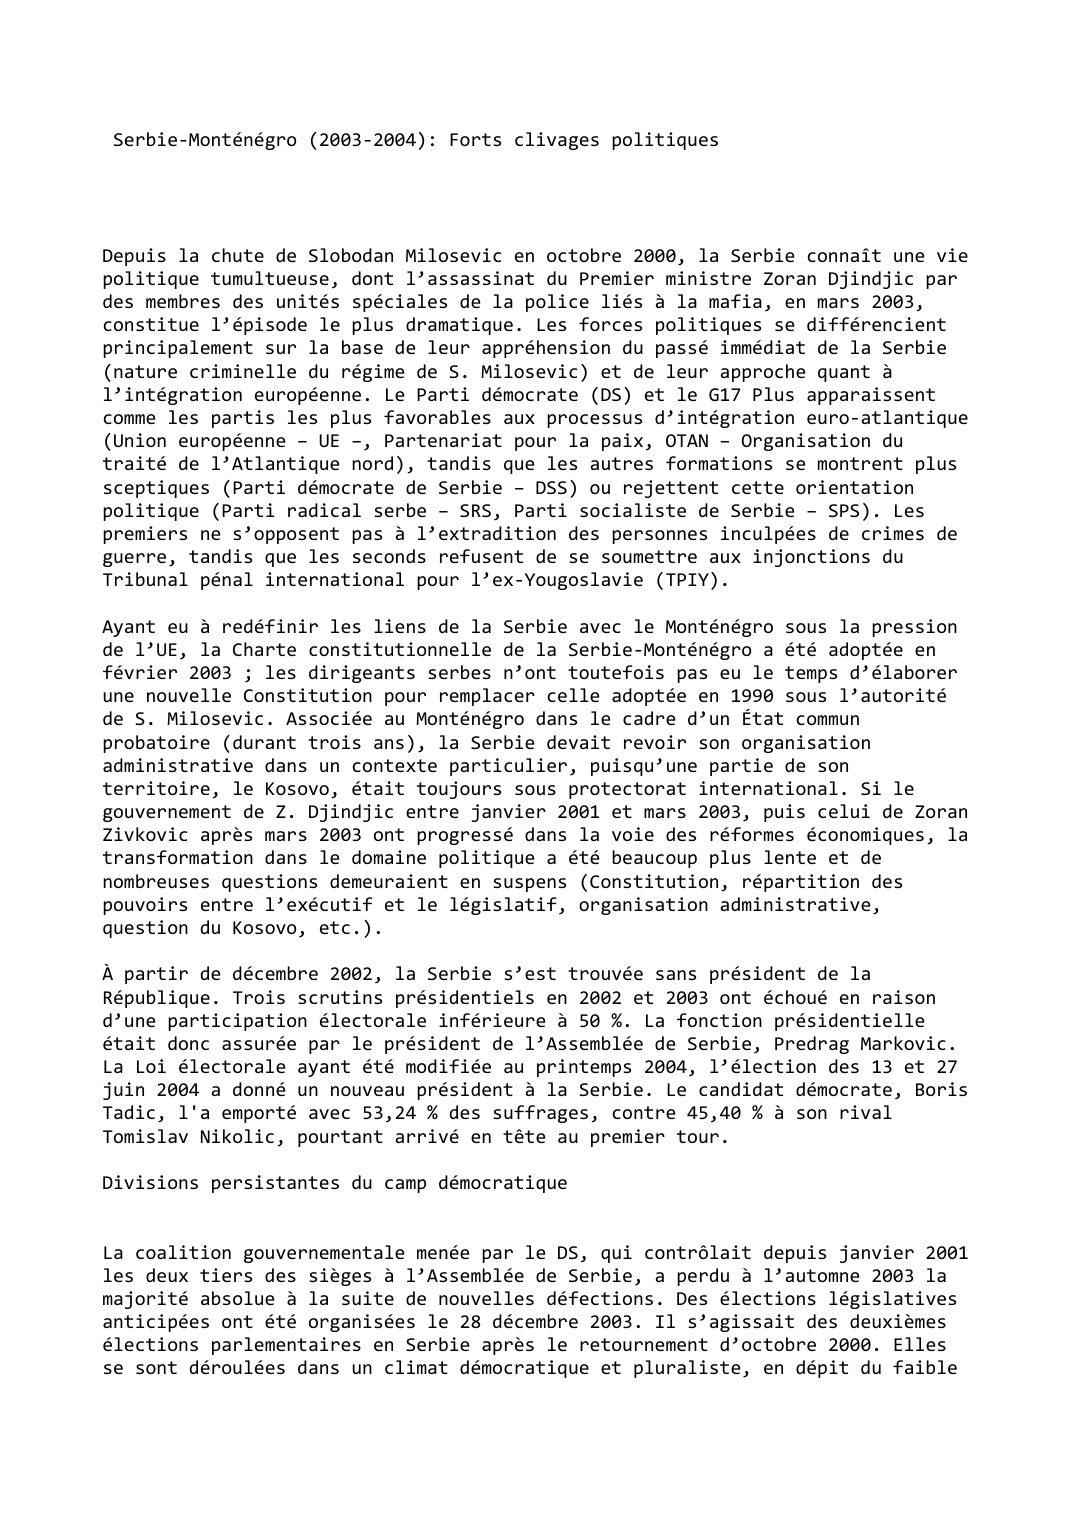 Prévisualisation du document Serbie-Monténégro (2003-2004): Forts clivages politiques